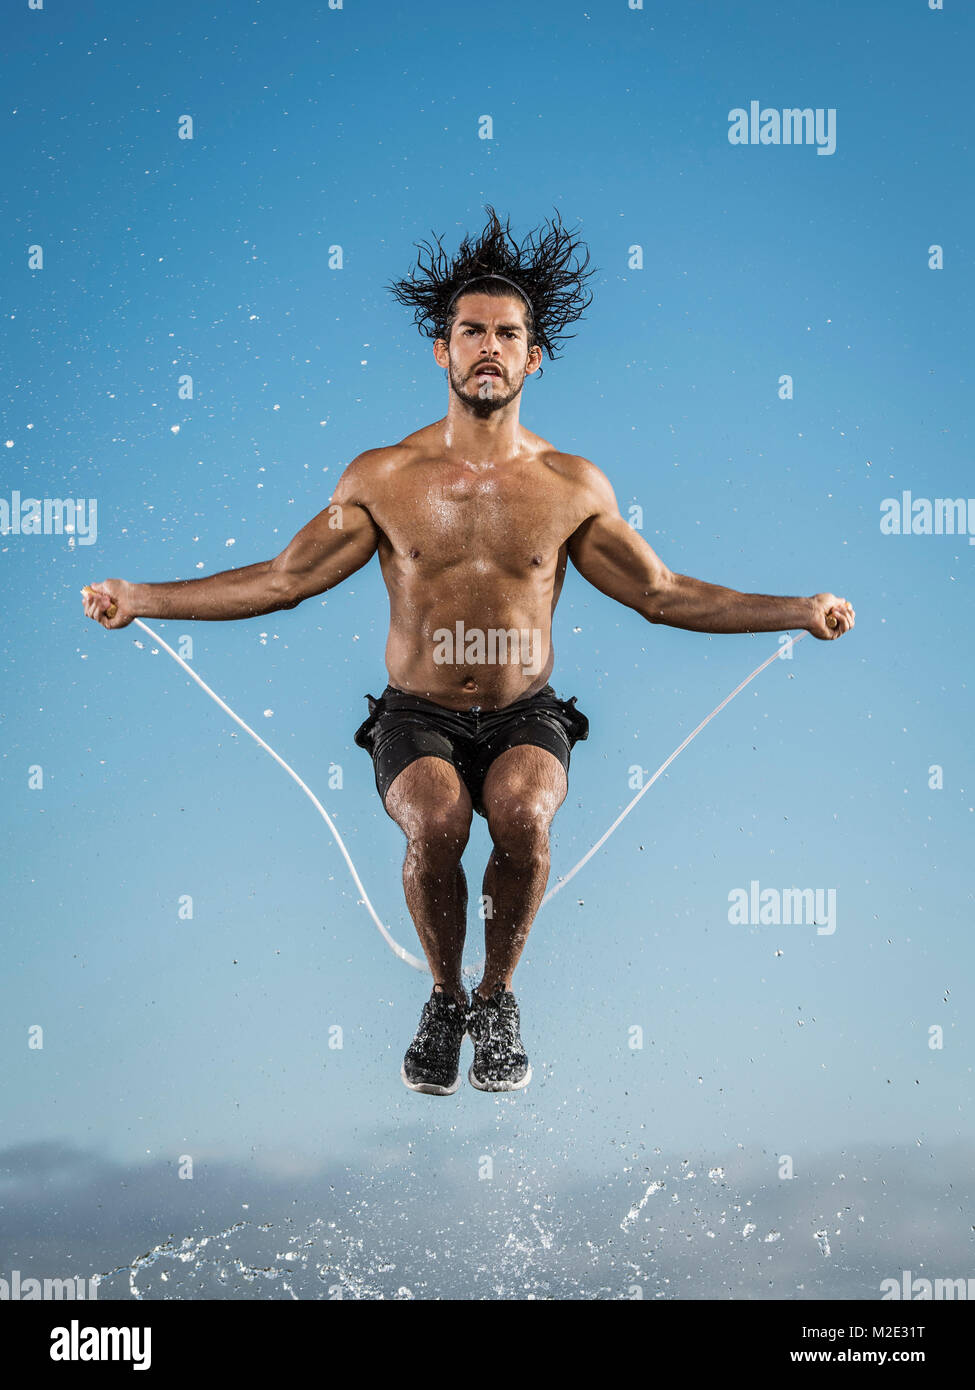 Water splashing on Hispanic man jumping rope Stock Photo